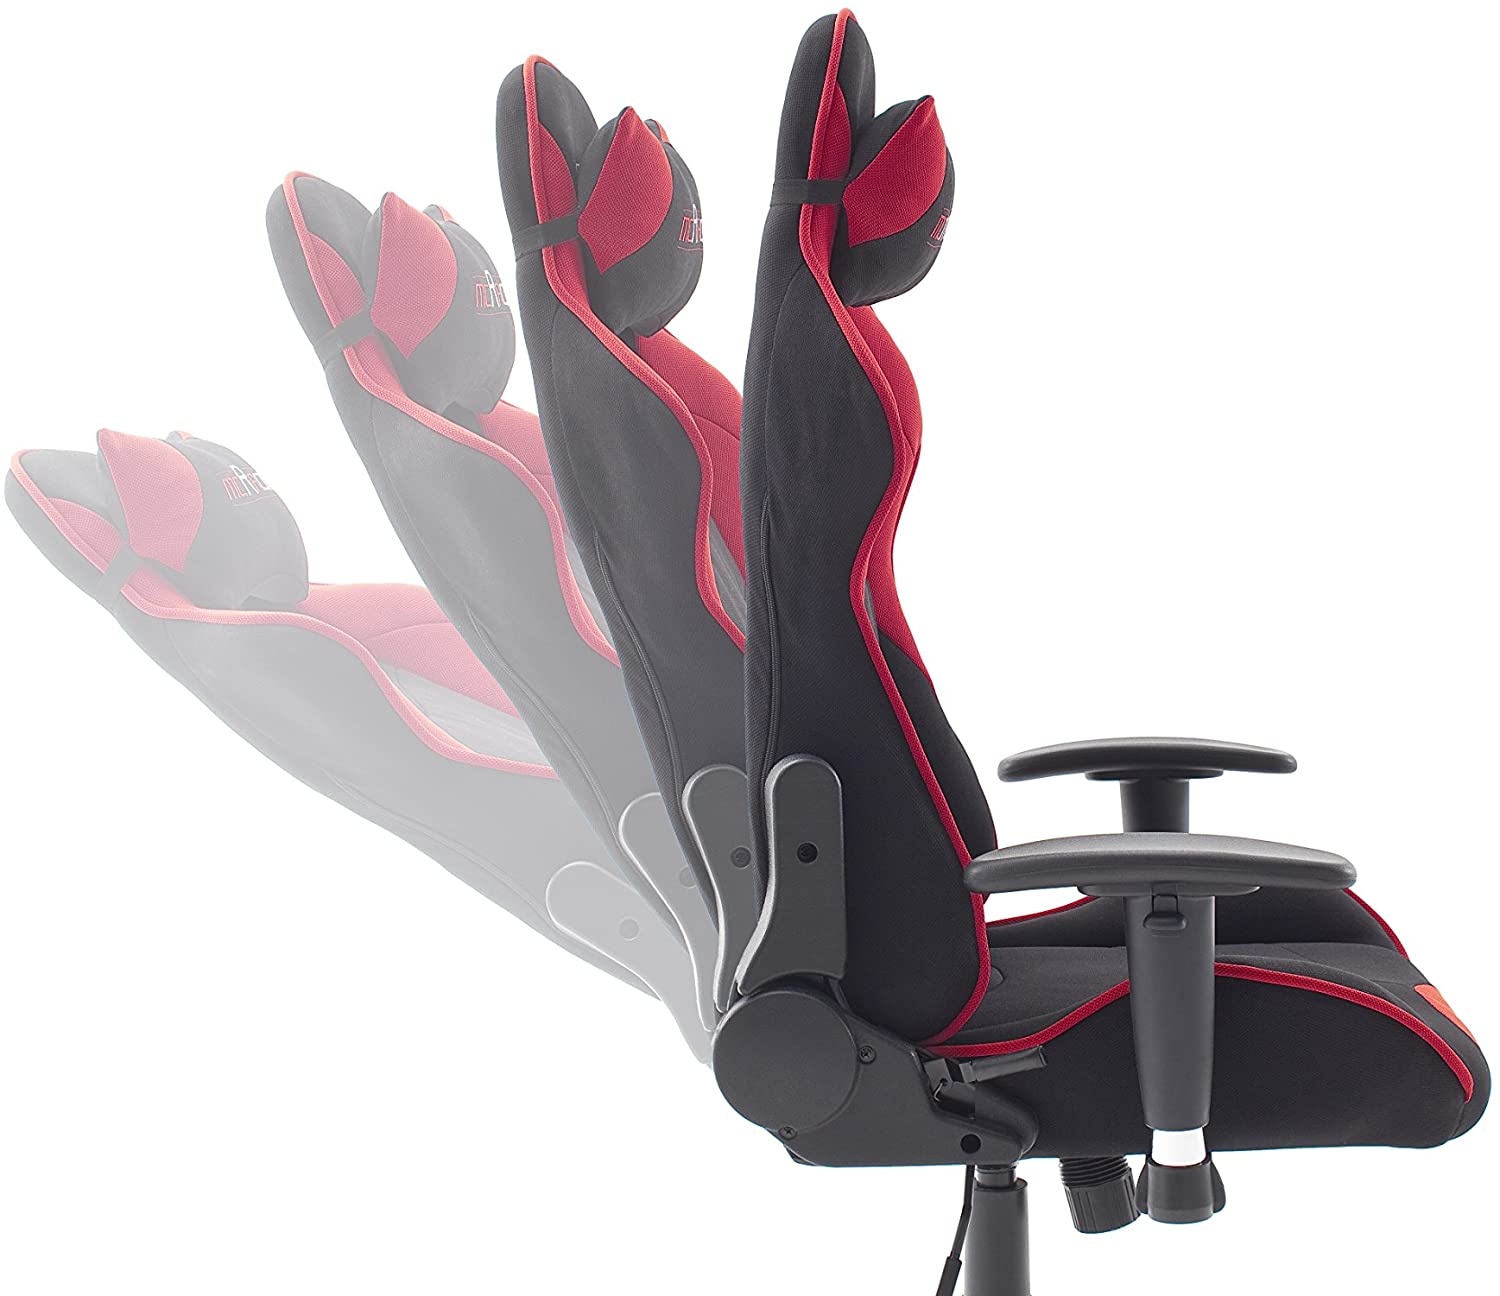 Bild von 1 Gaming Chair Stoff schwarz/rot